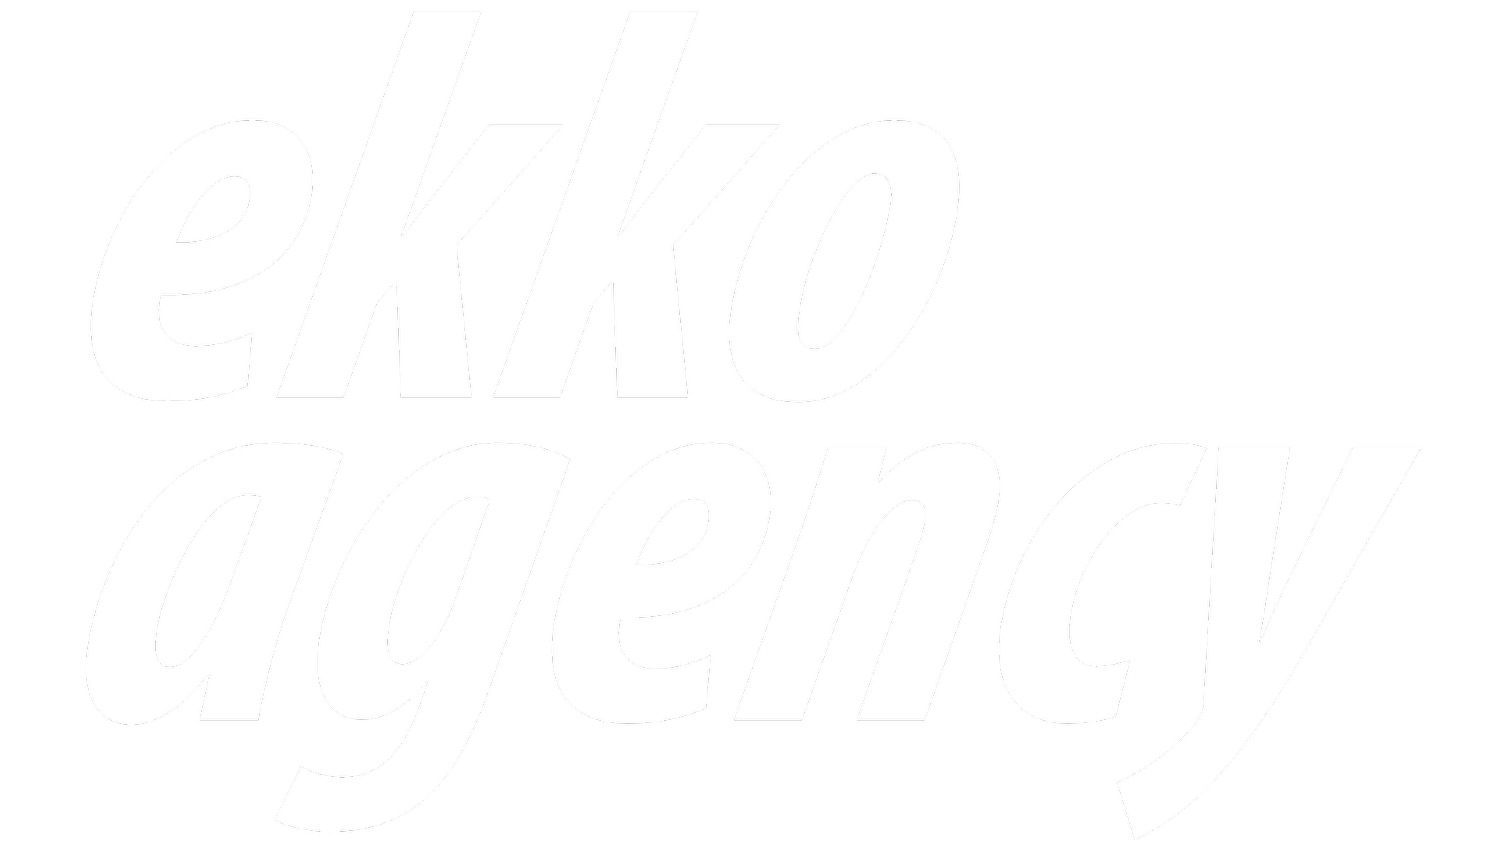 Ekko Agency